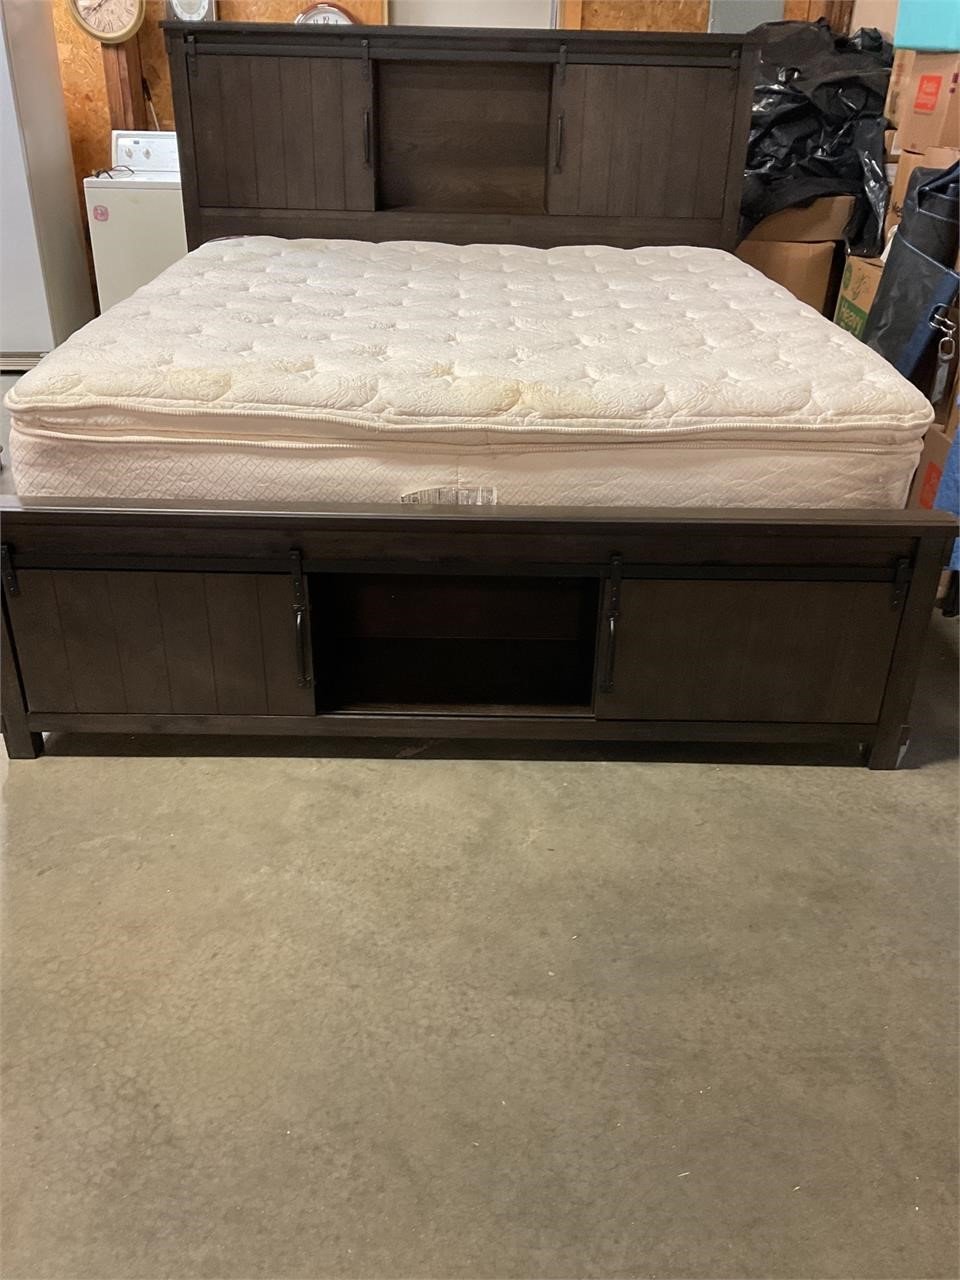 New King Platform Storage Bed w mattress